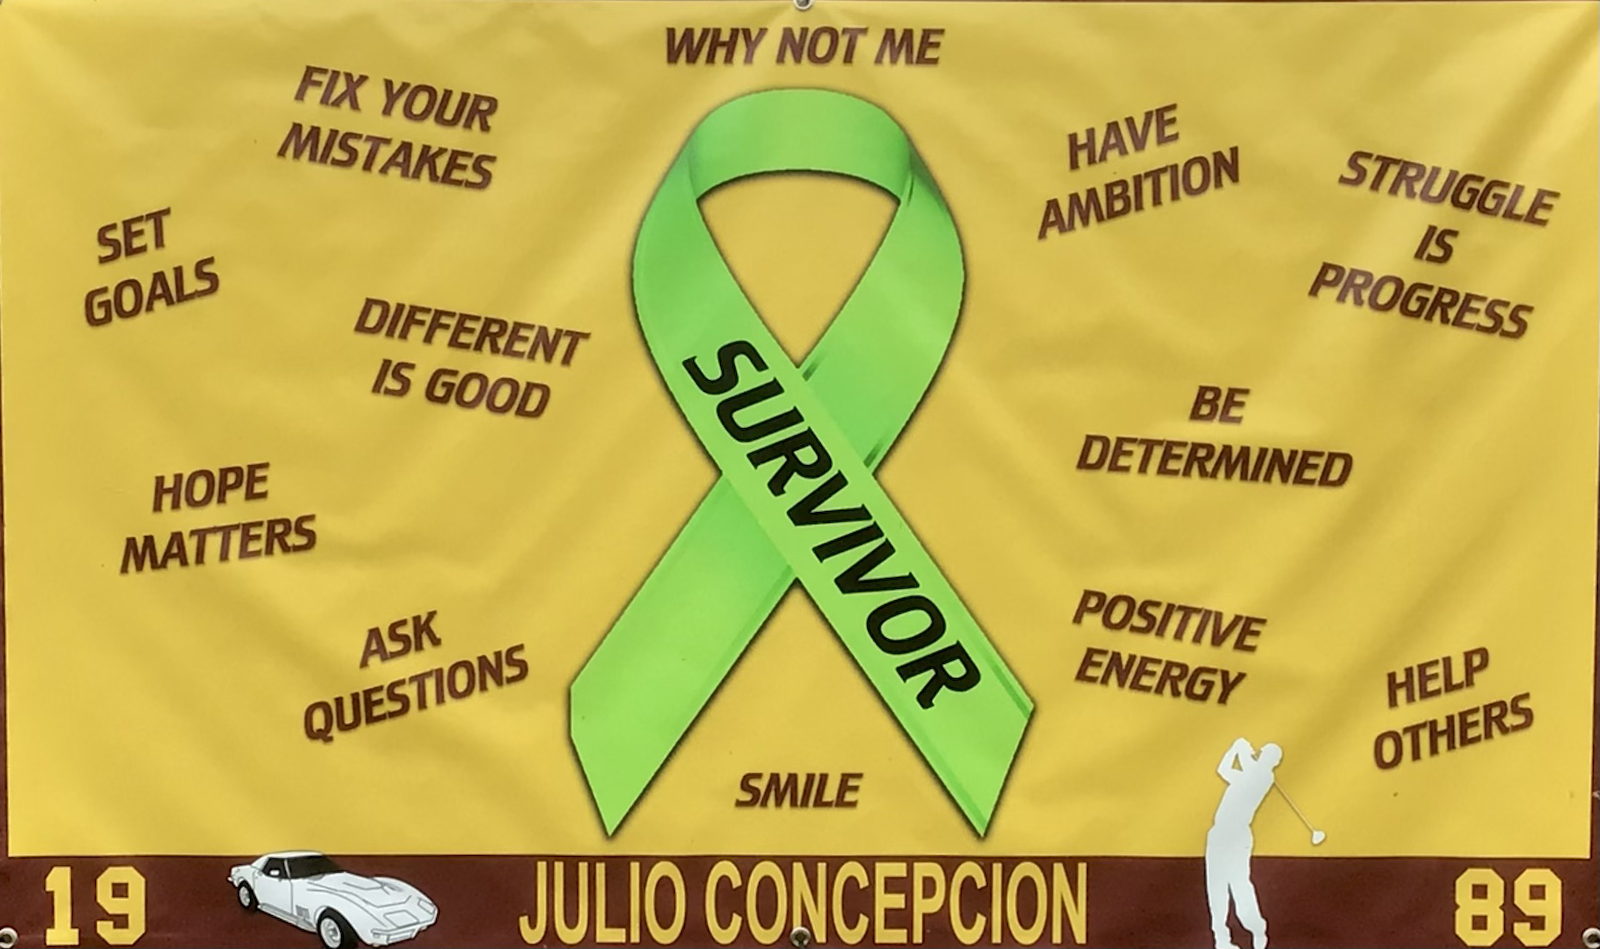 Julio Concepcion